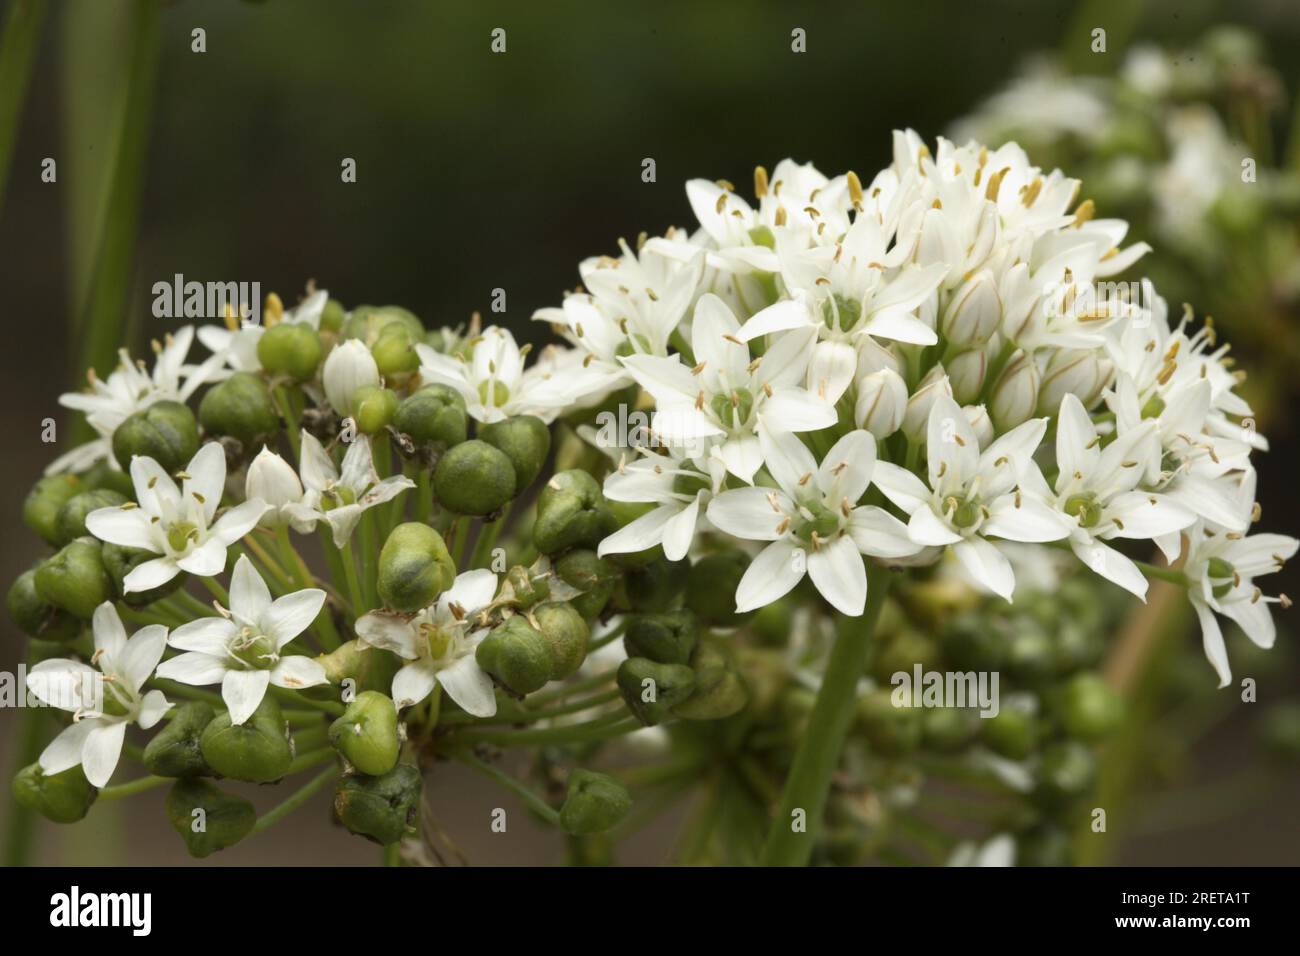 'New Belt' - Chive Garlic Chives (Allium tuberosum) Stock Photo